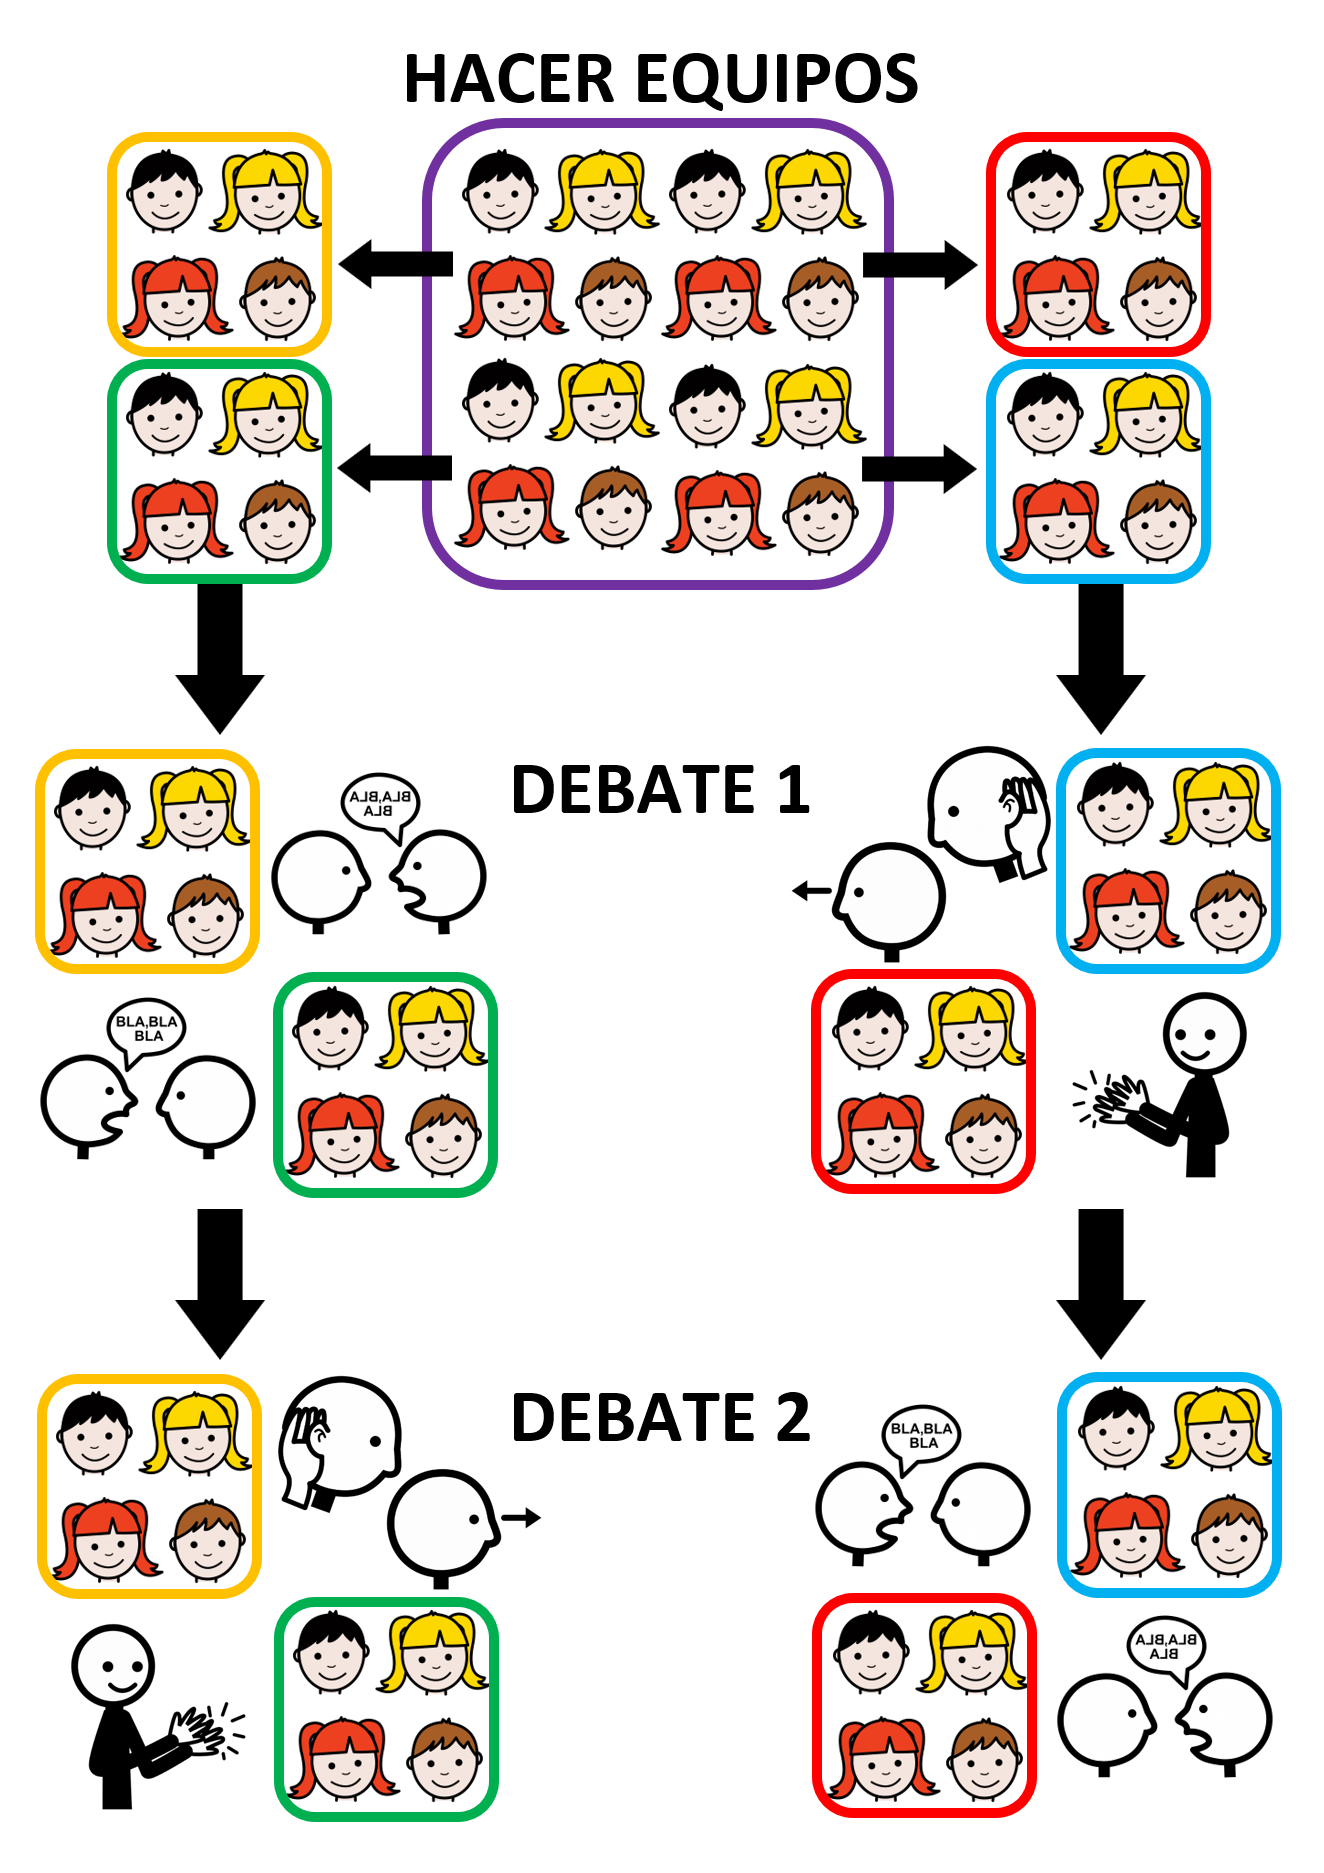  La imagen muestra la dinámica del concurso de debate secuenciada mediante flechas.